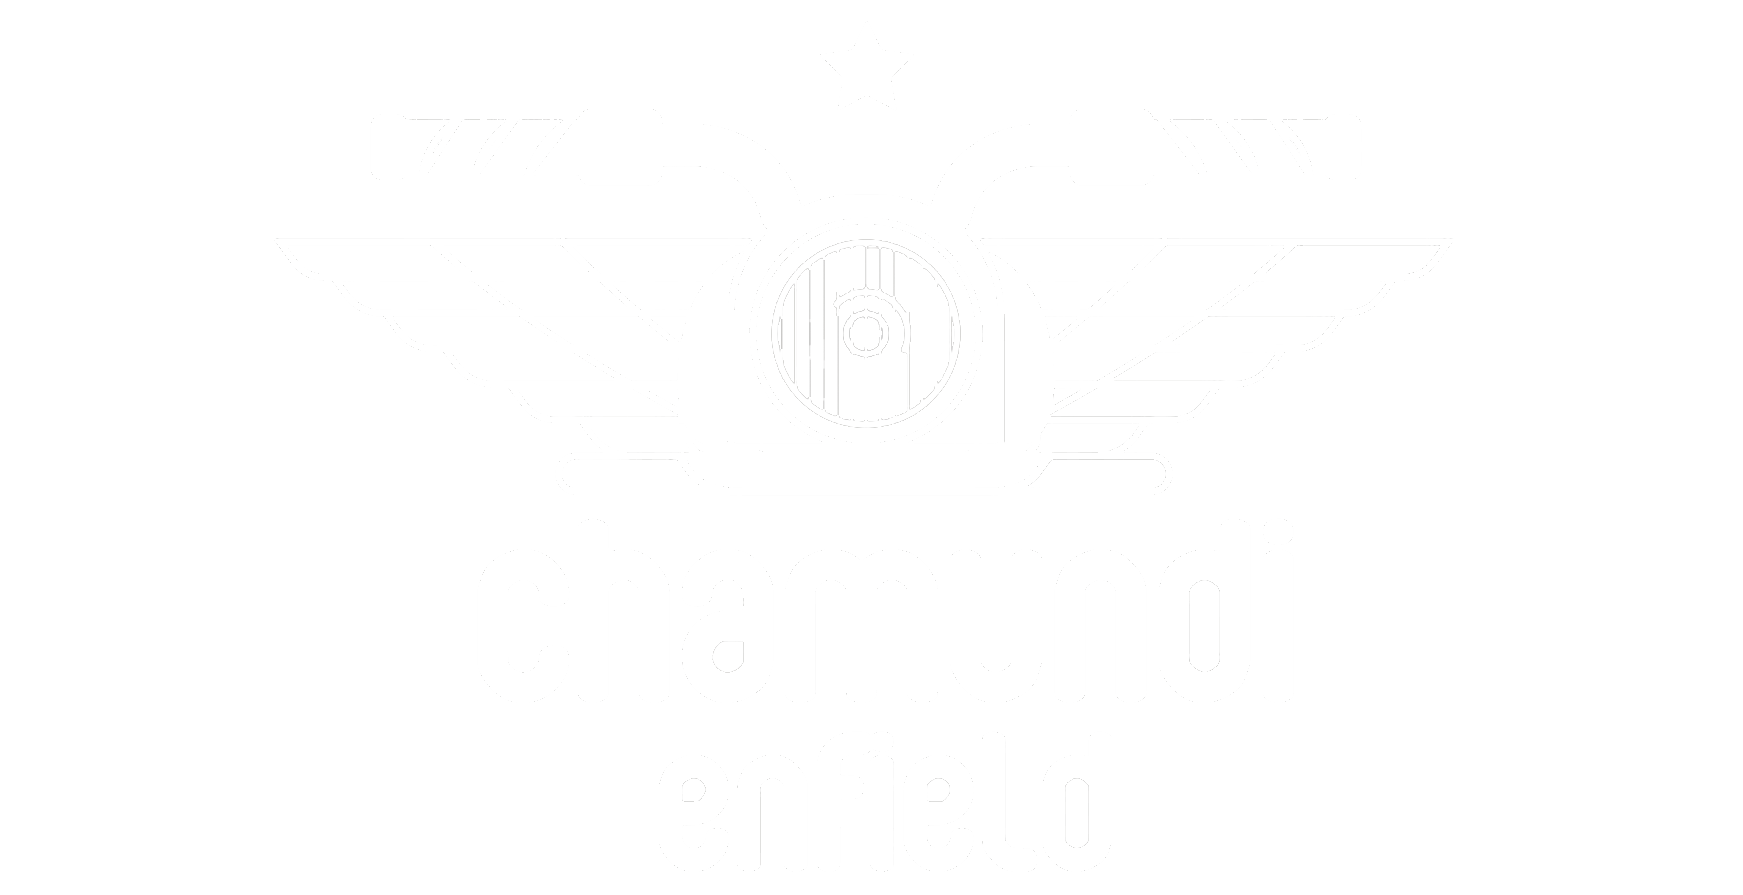 Chamundienfield